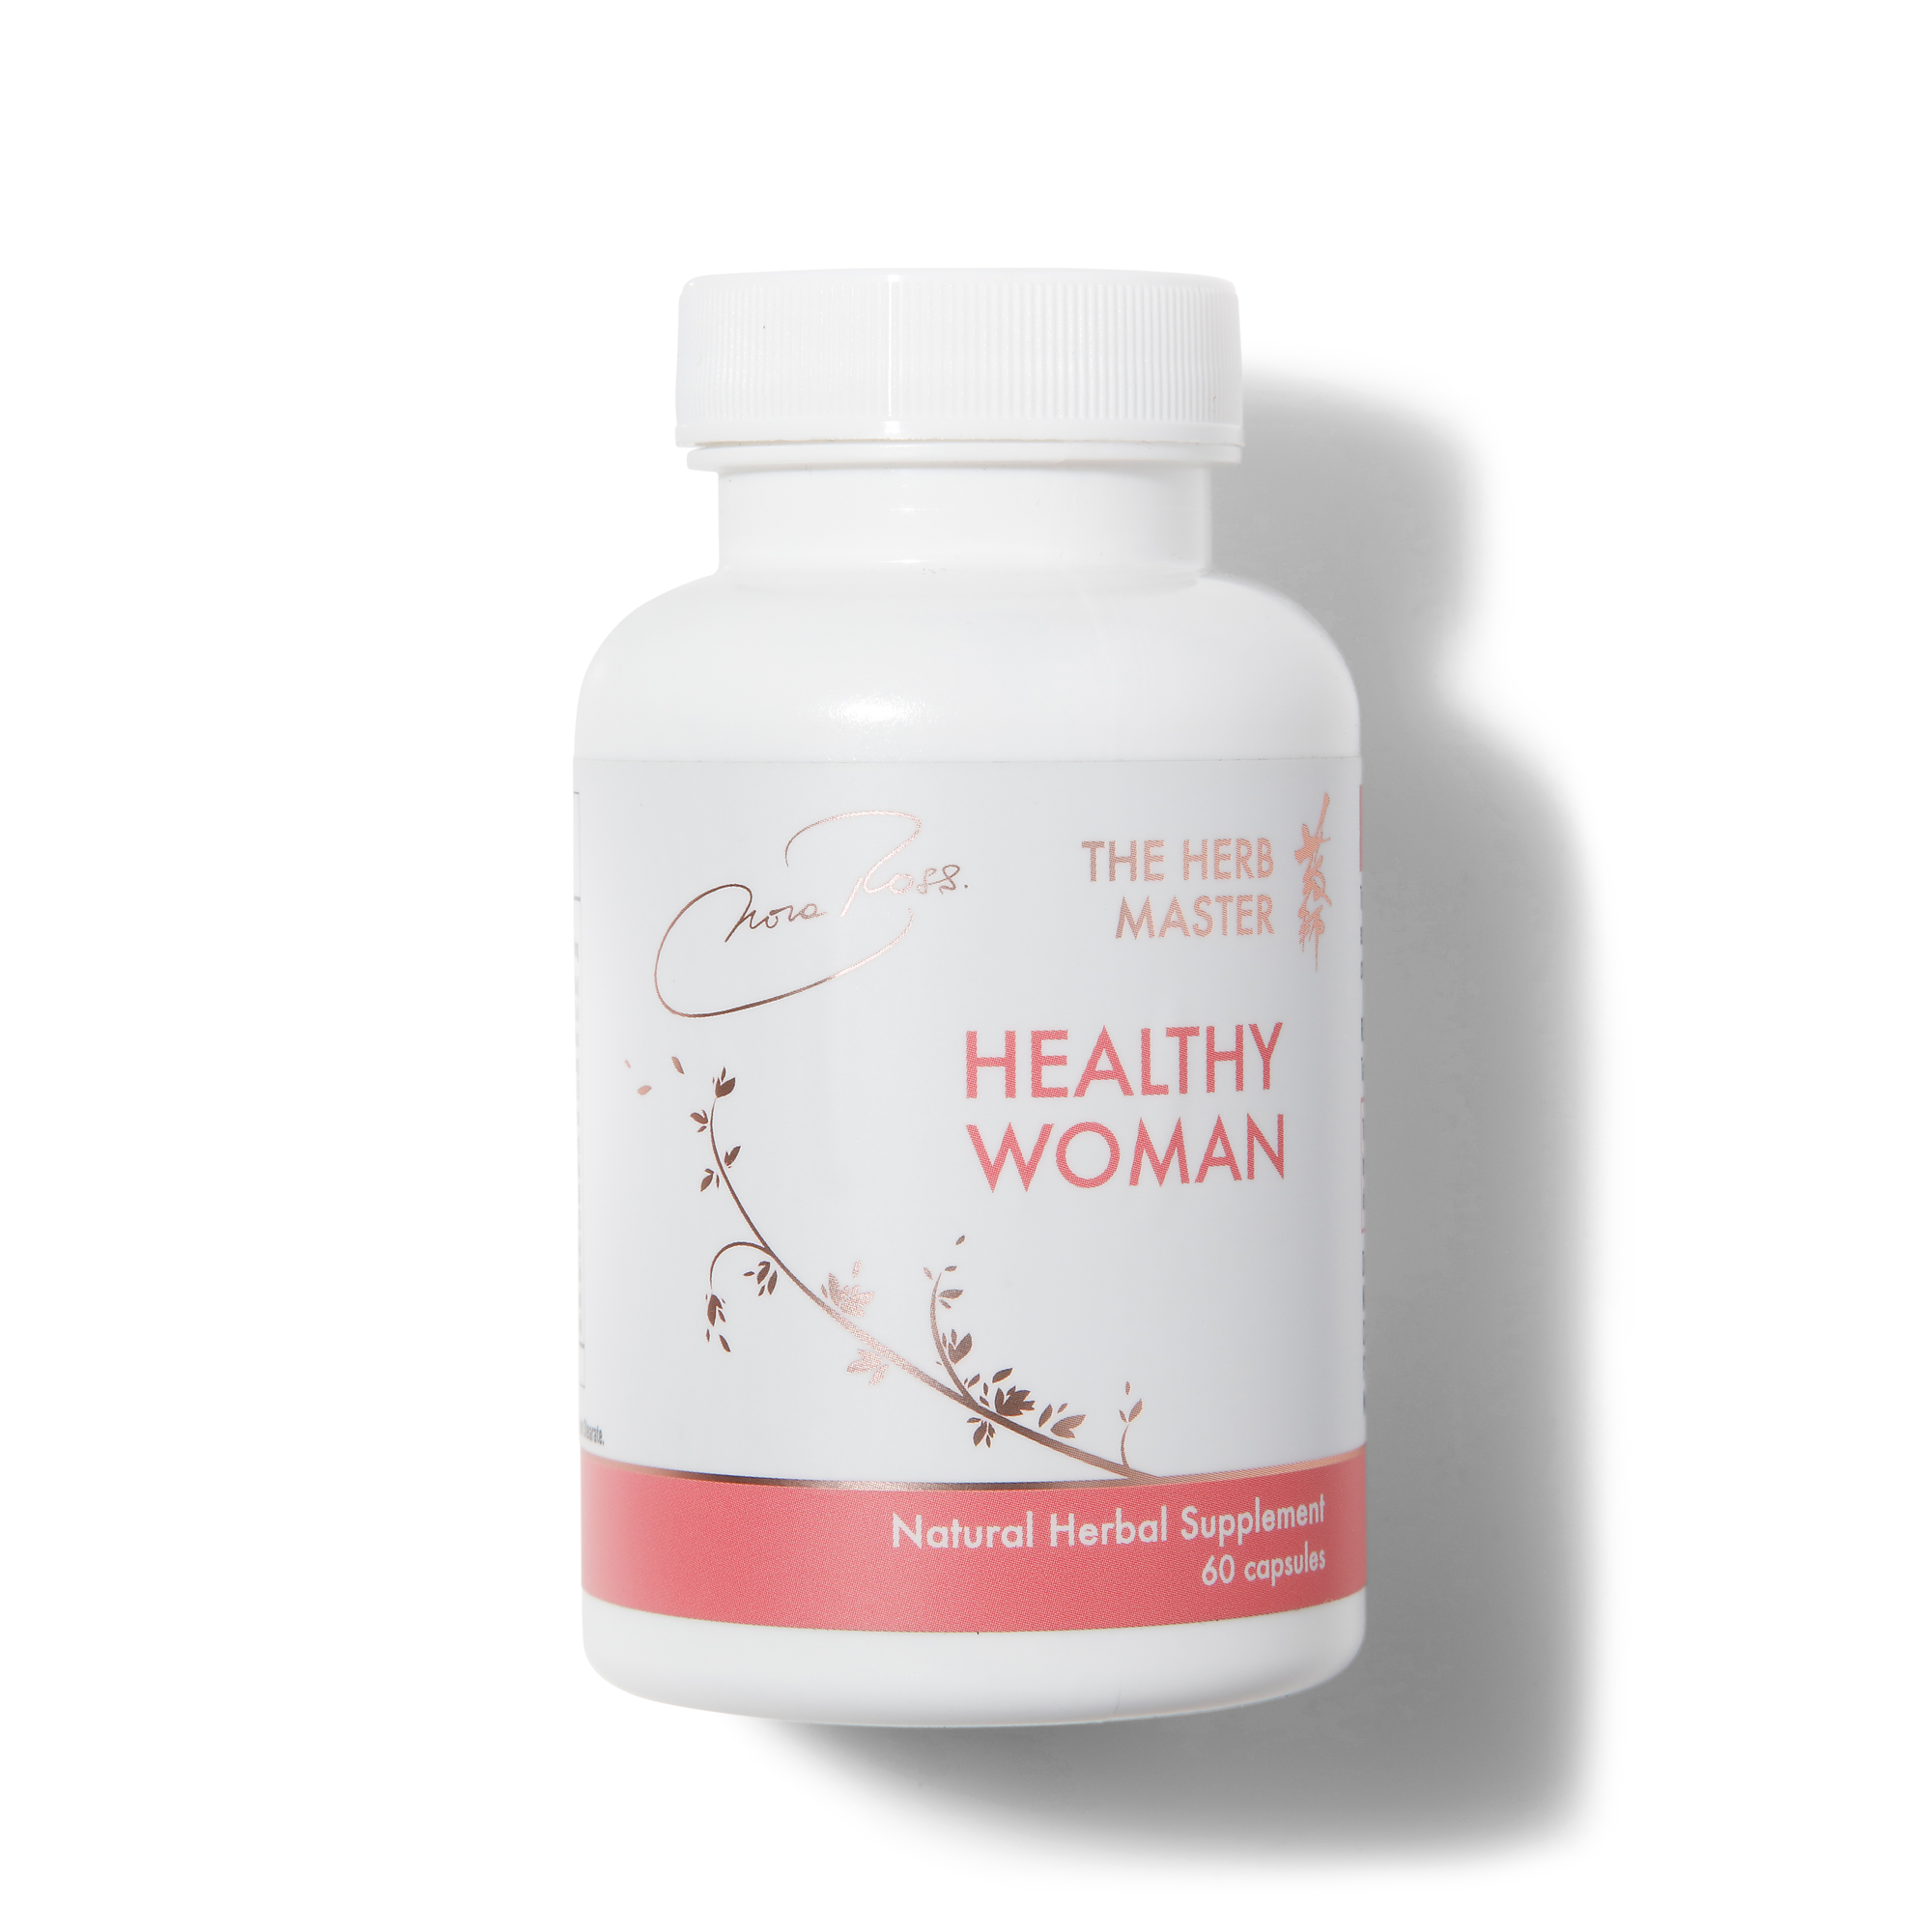 Suplementos Healthy Woman® - Estrógeno avanzado, soporte para la menopausia y equilibrio hormonal